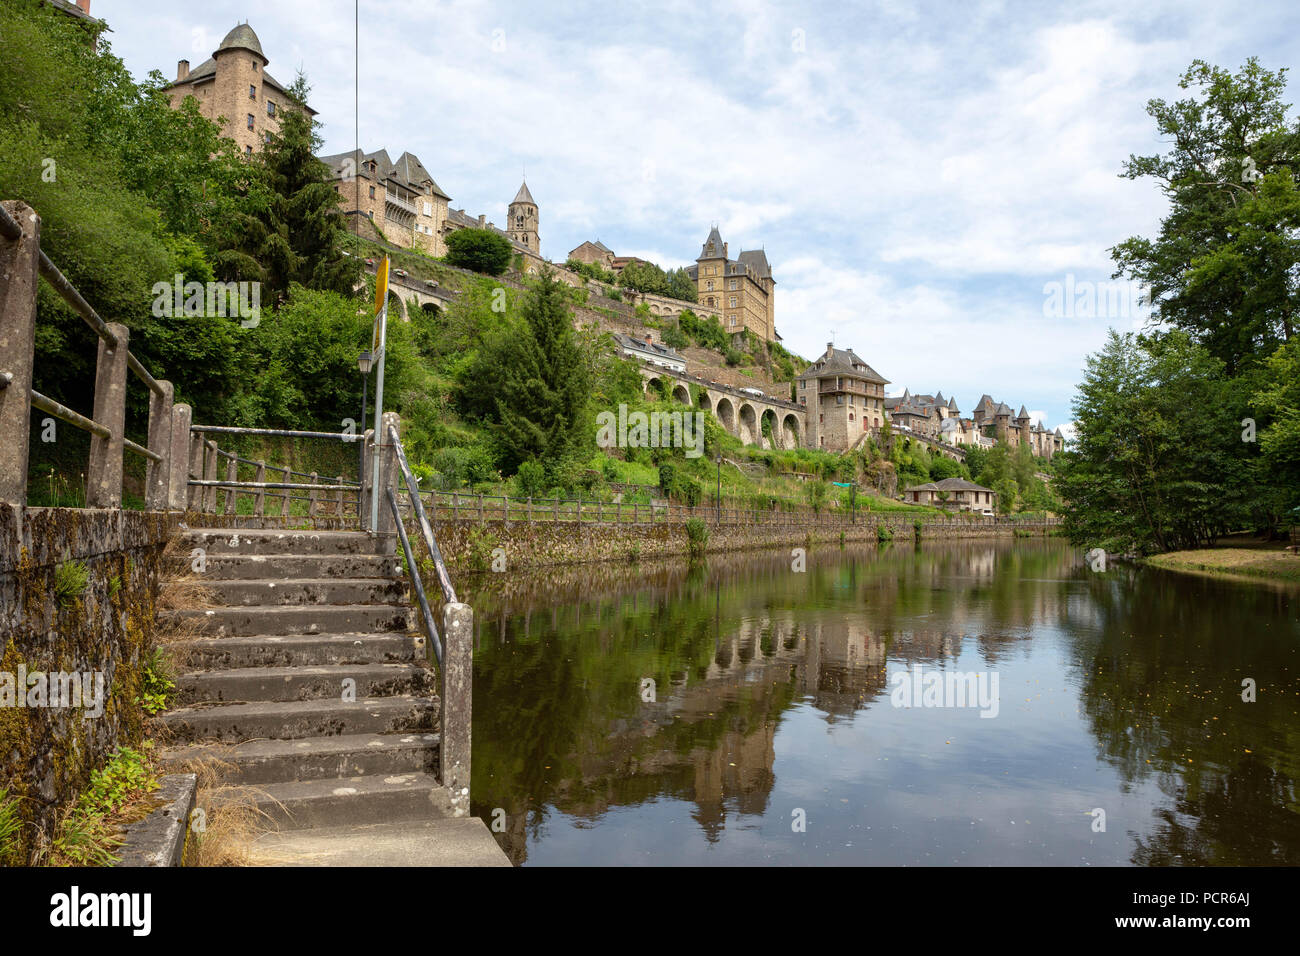 Frankreich, UZERCHE - Juli 12, 2018: Panorama der malerischen, mittelalterlichen Dorf mit dem Fluss Vezere davor. Stockfoto